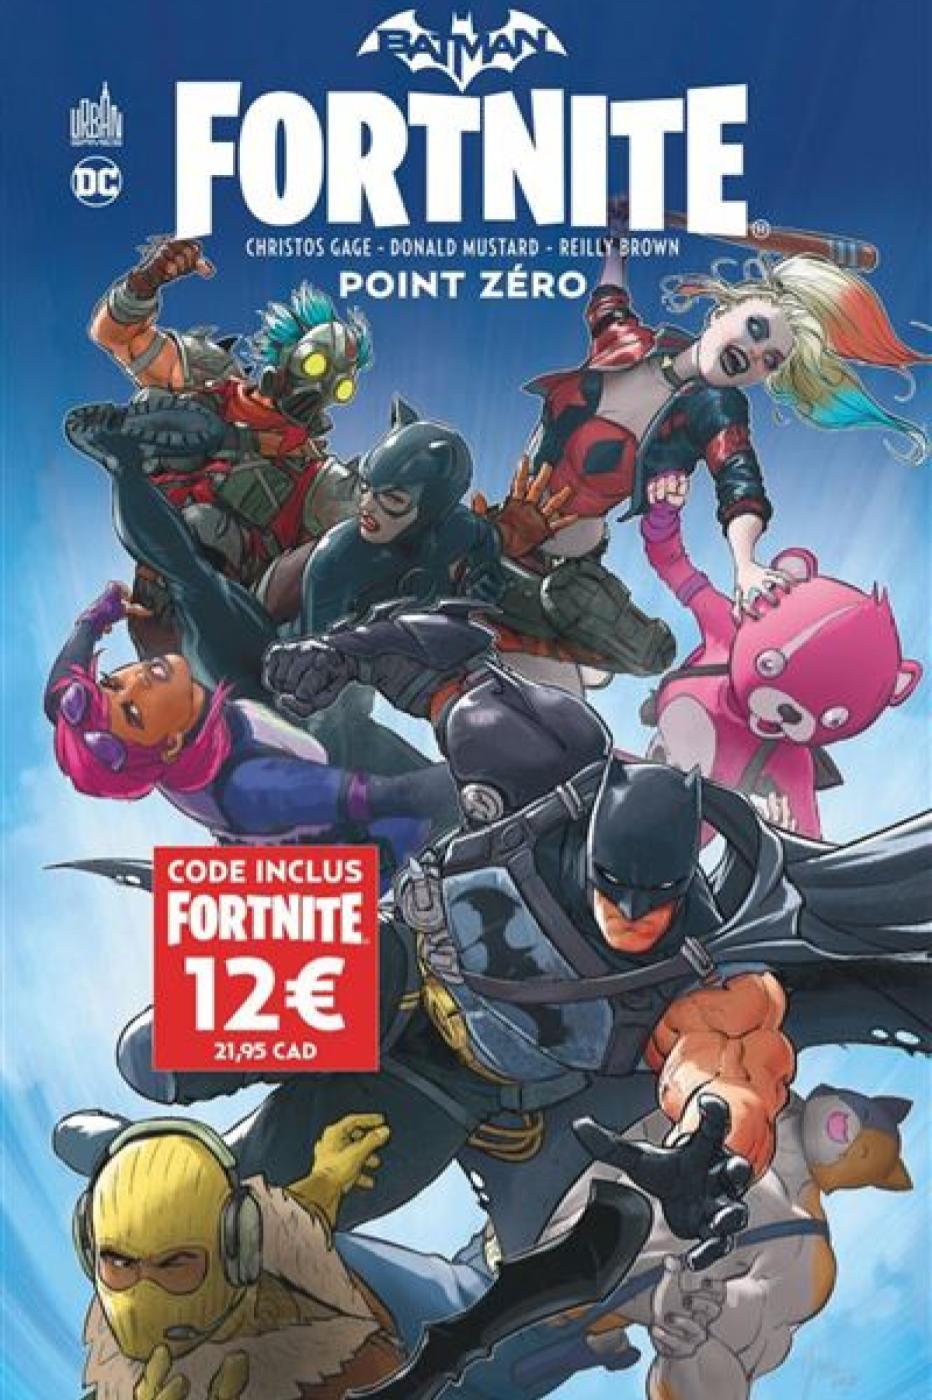 Batman Fortnite Point Zero